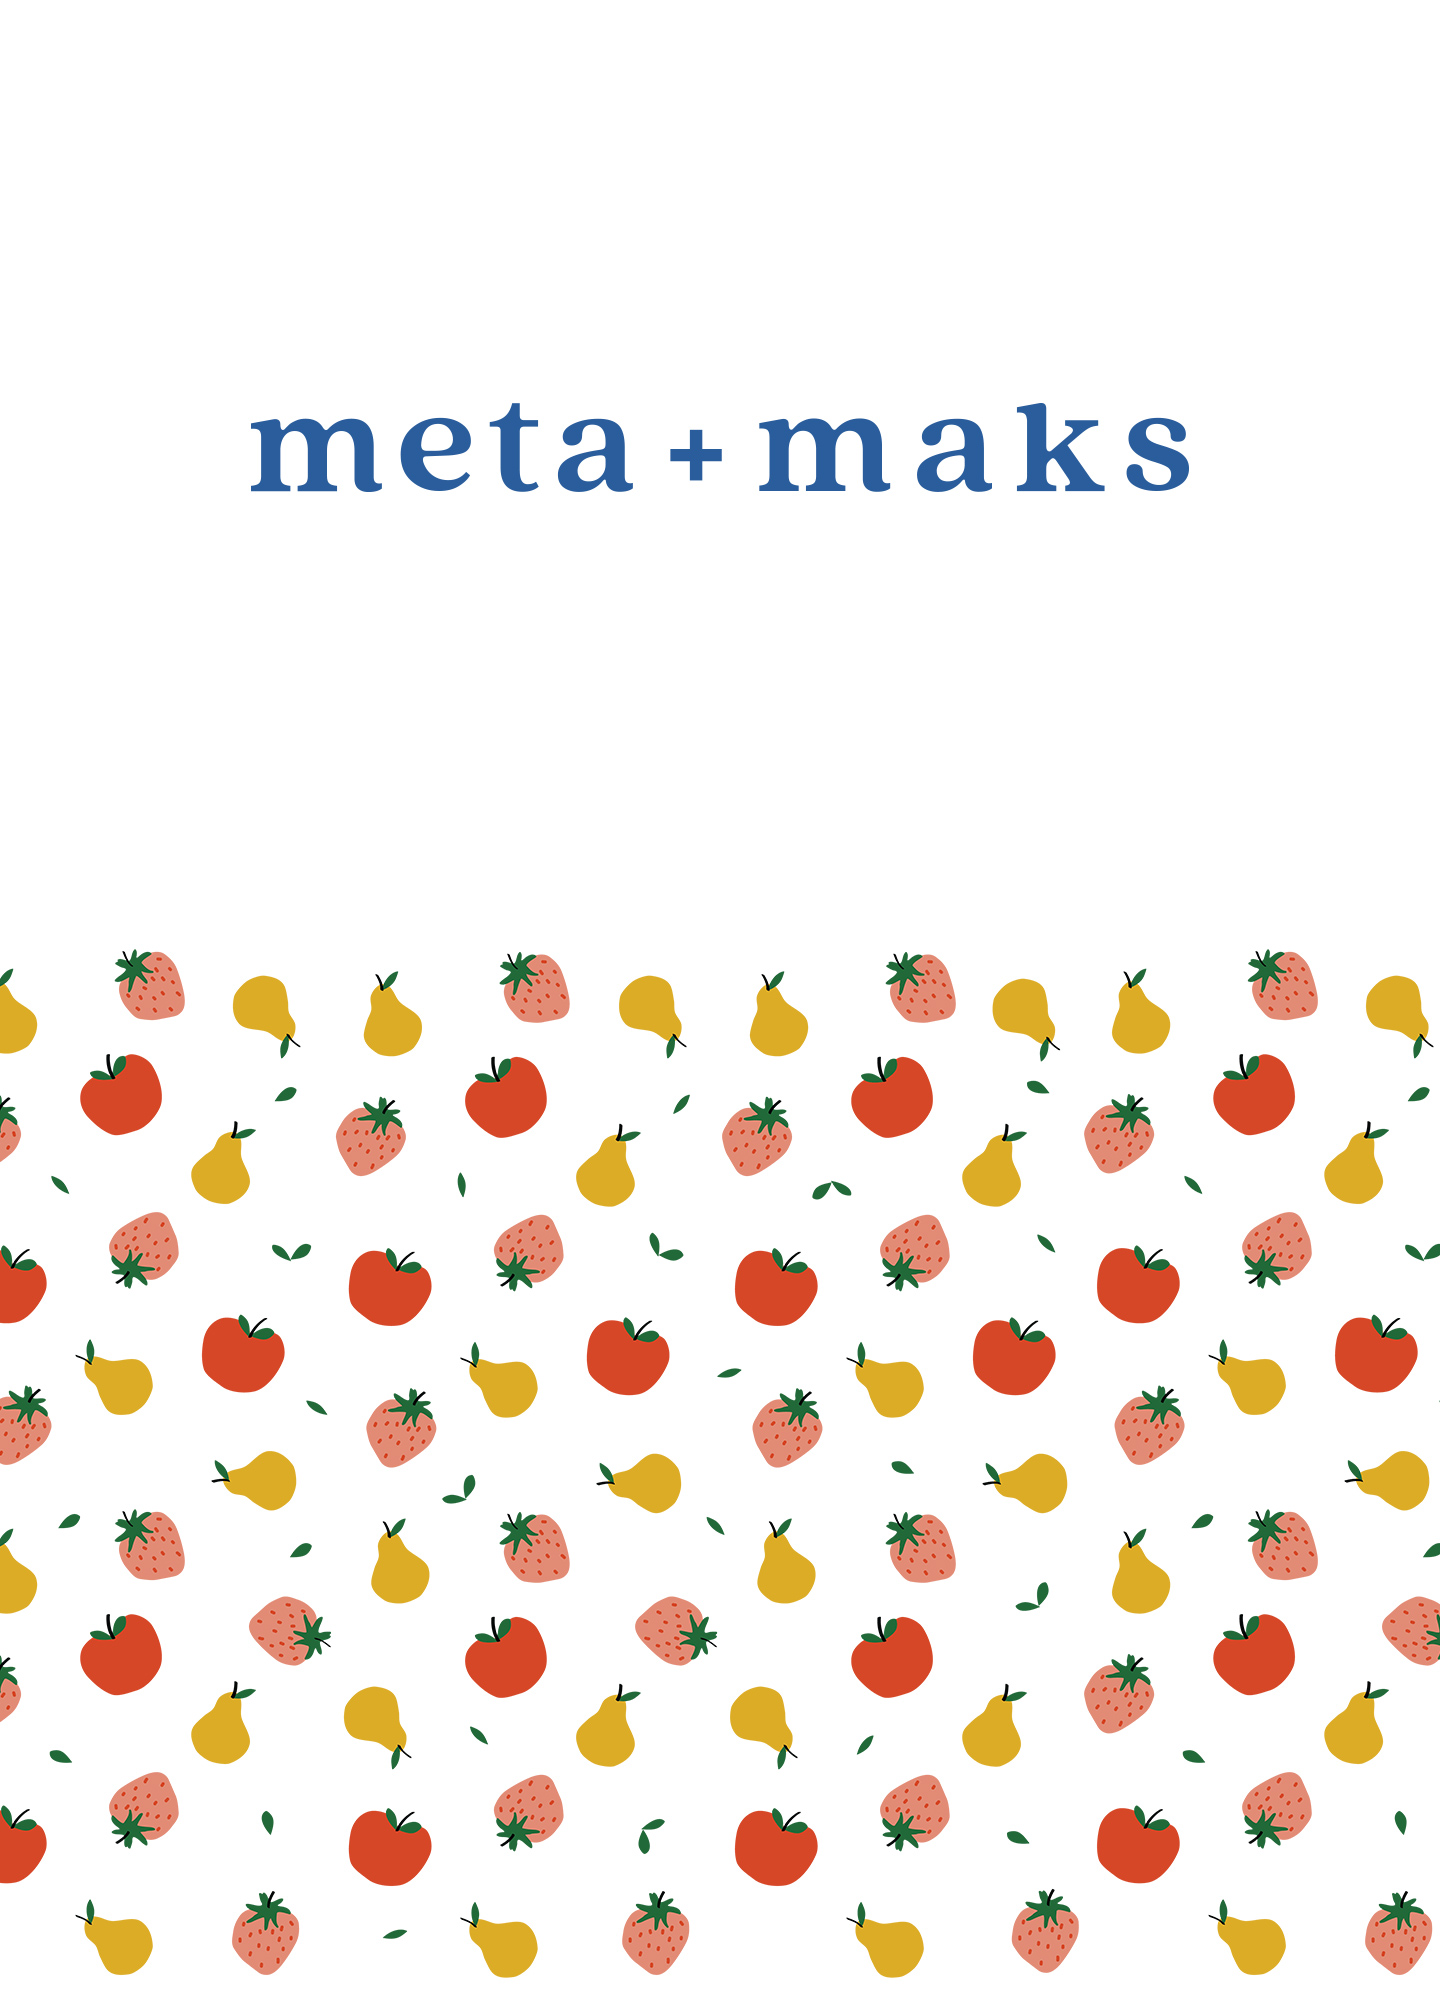 Juice Brand Meta + Maks Concept